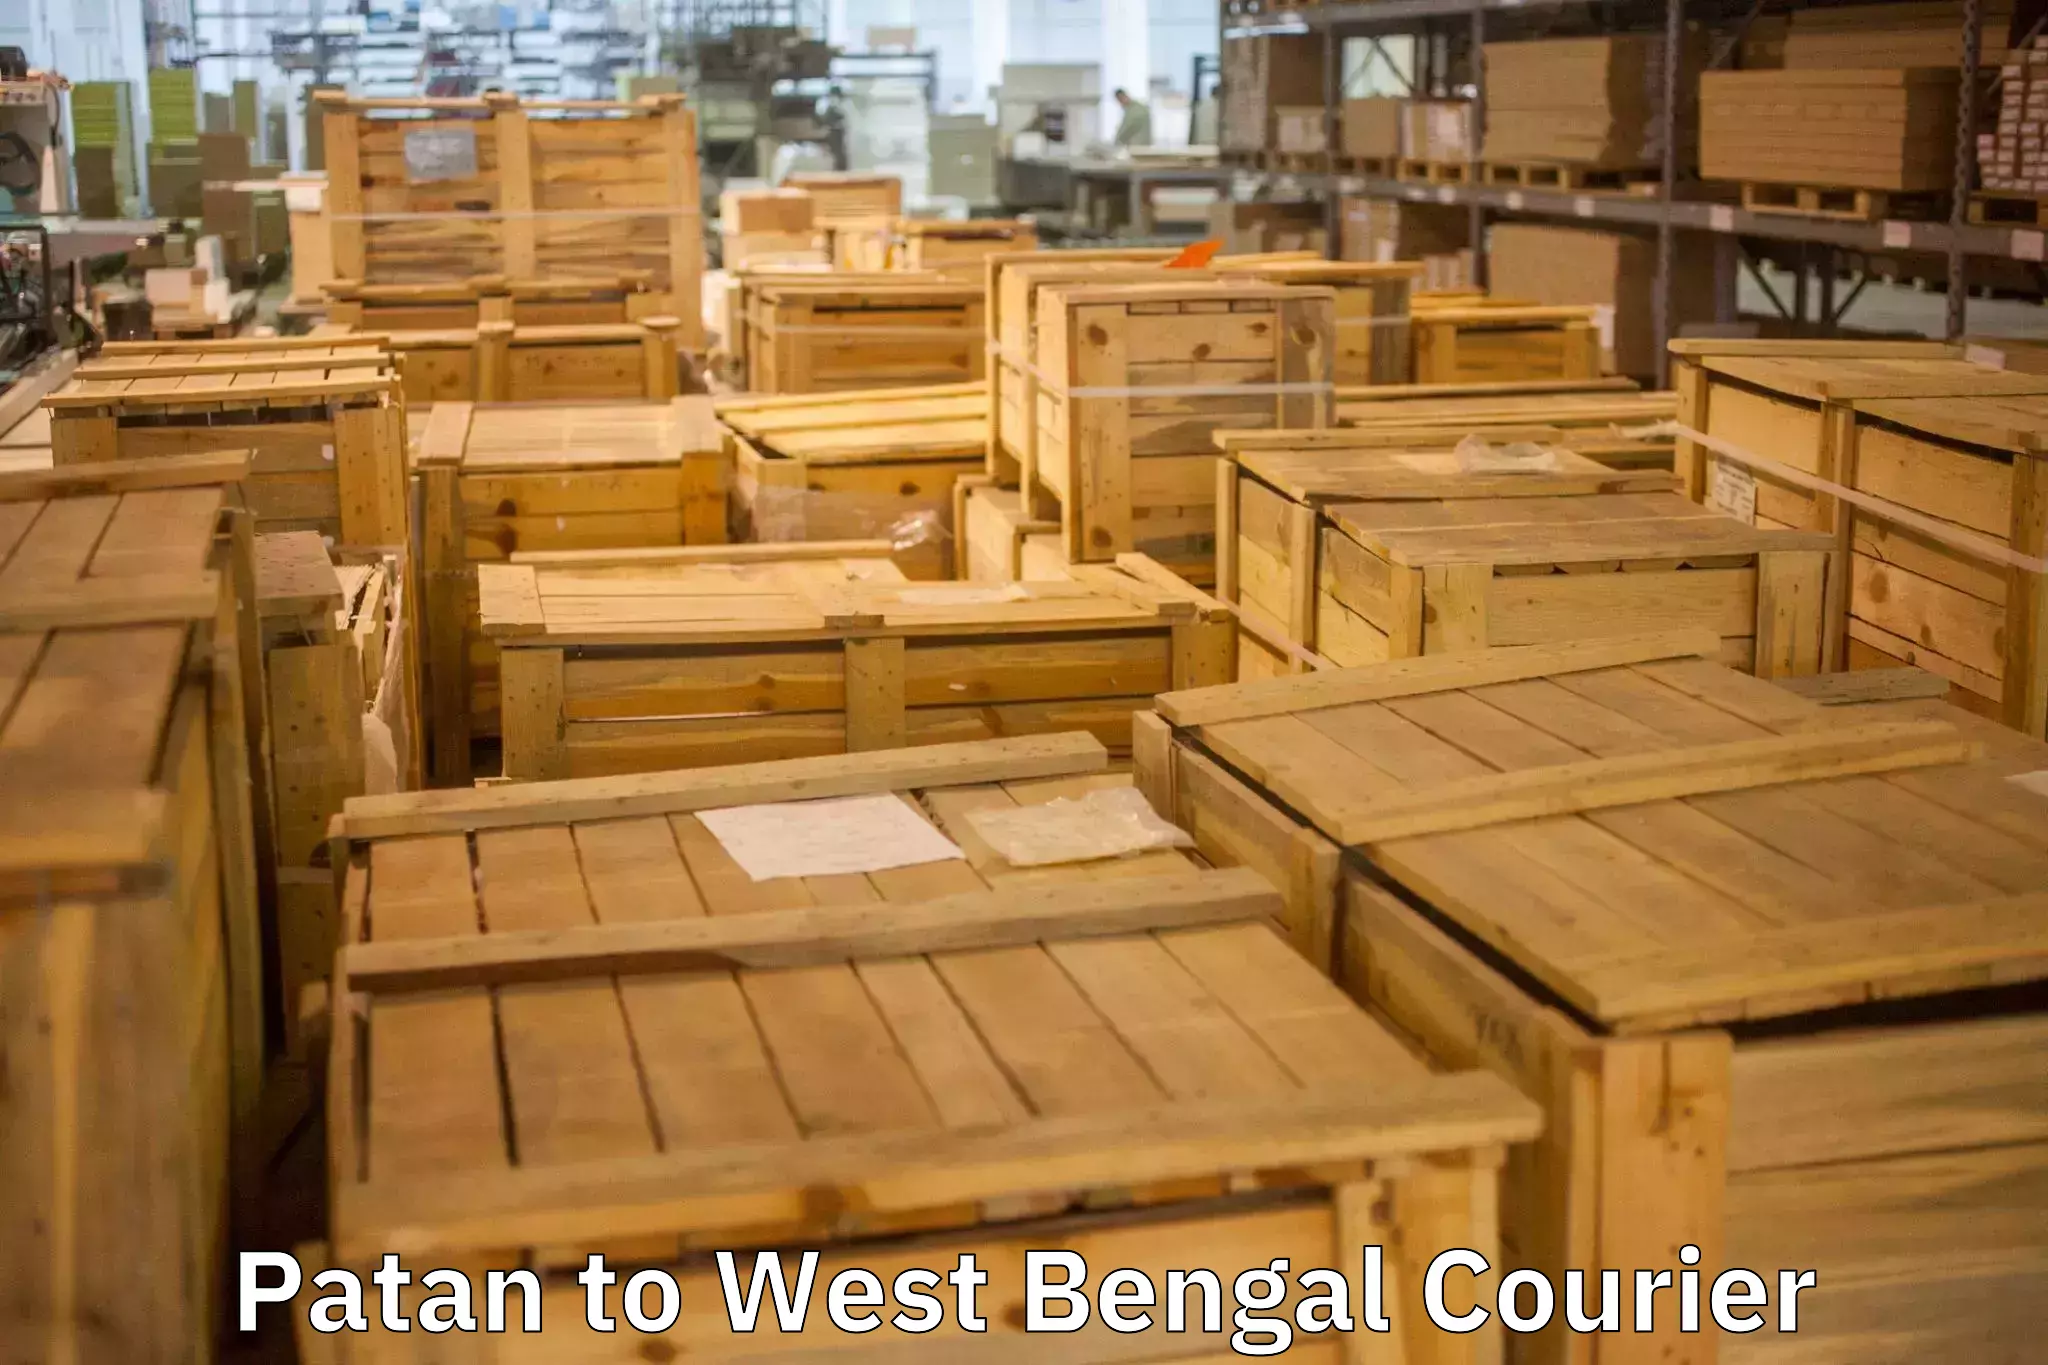 Furniture moving plans Patan to Chittaranjan